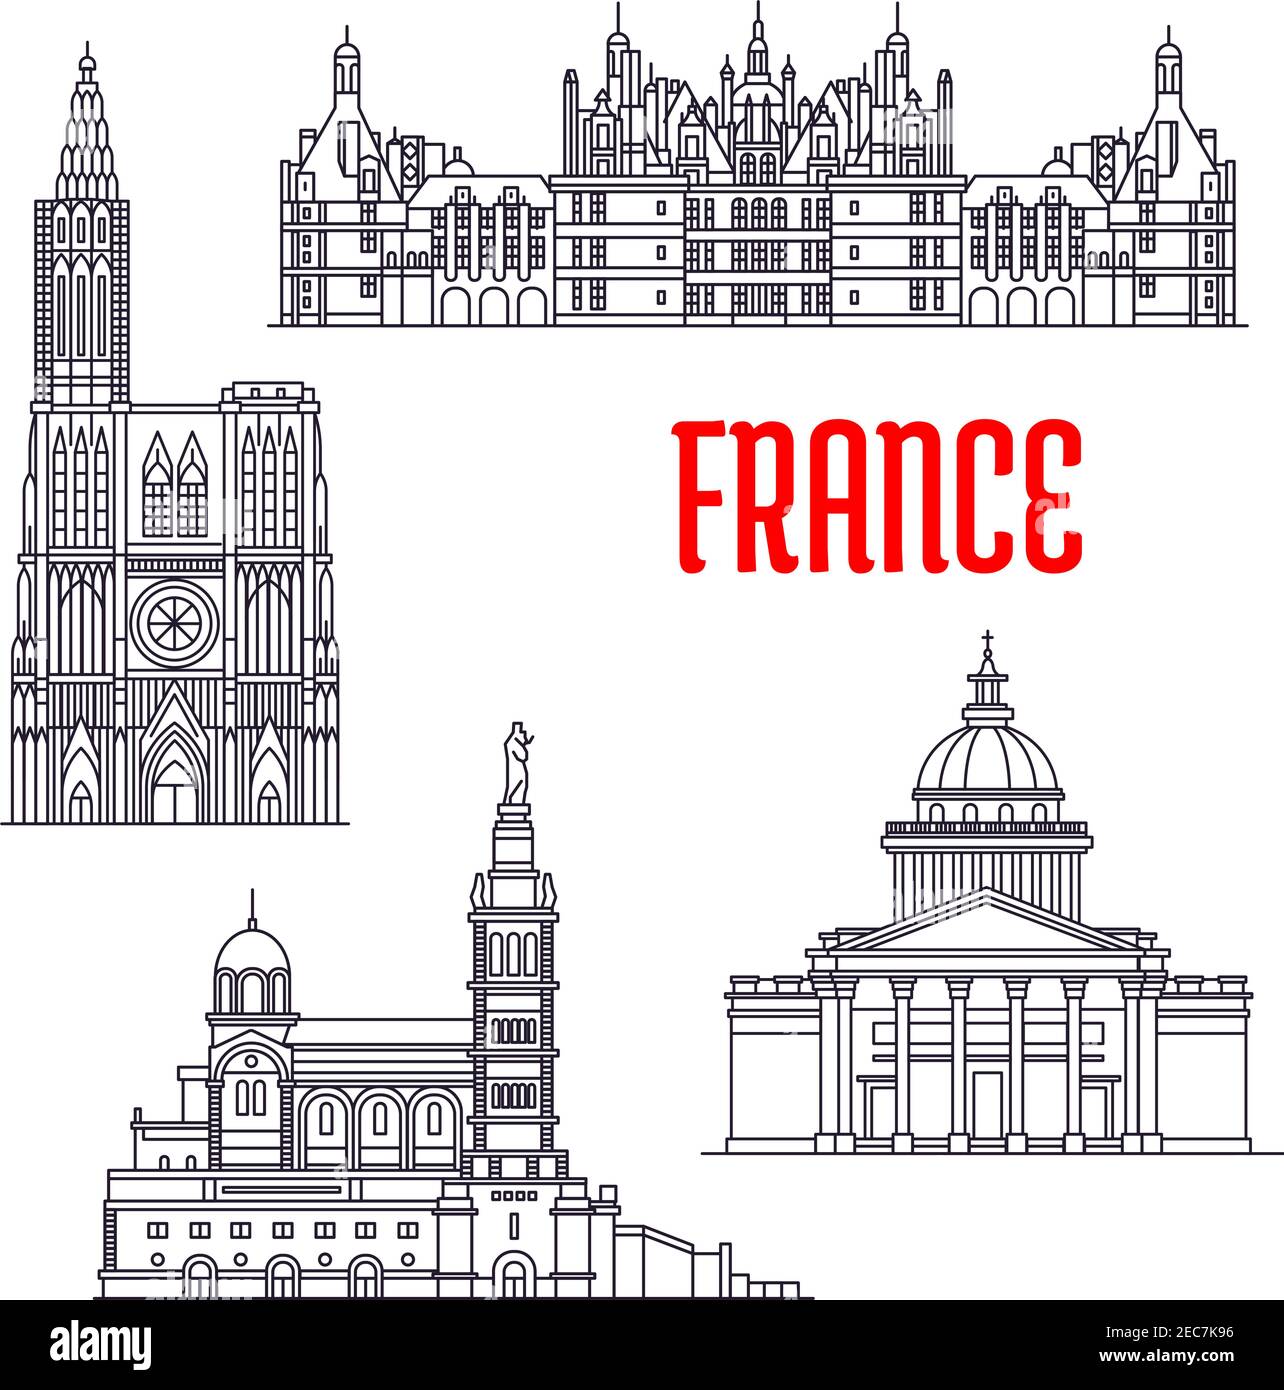 Historische Architektur Gebäude von Frankreich. Vektor dünne Linie Ikonen des Pantheon, Chateau de Chambord, Basilique Notre Dame de La Garde, Strasbourg Cathe Stock Vektor